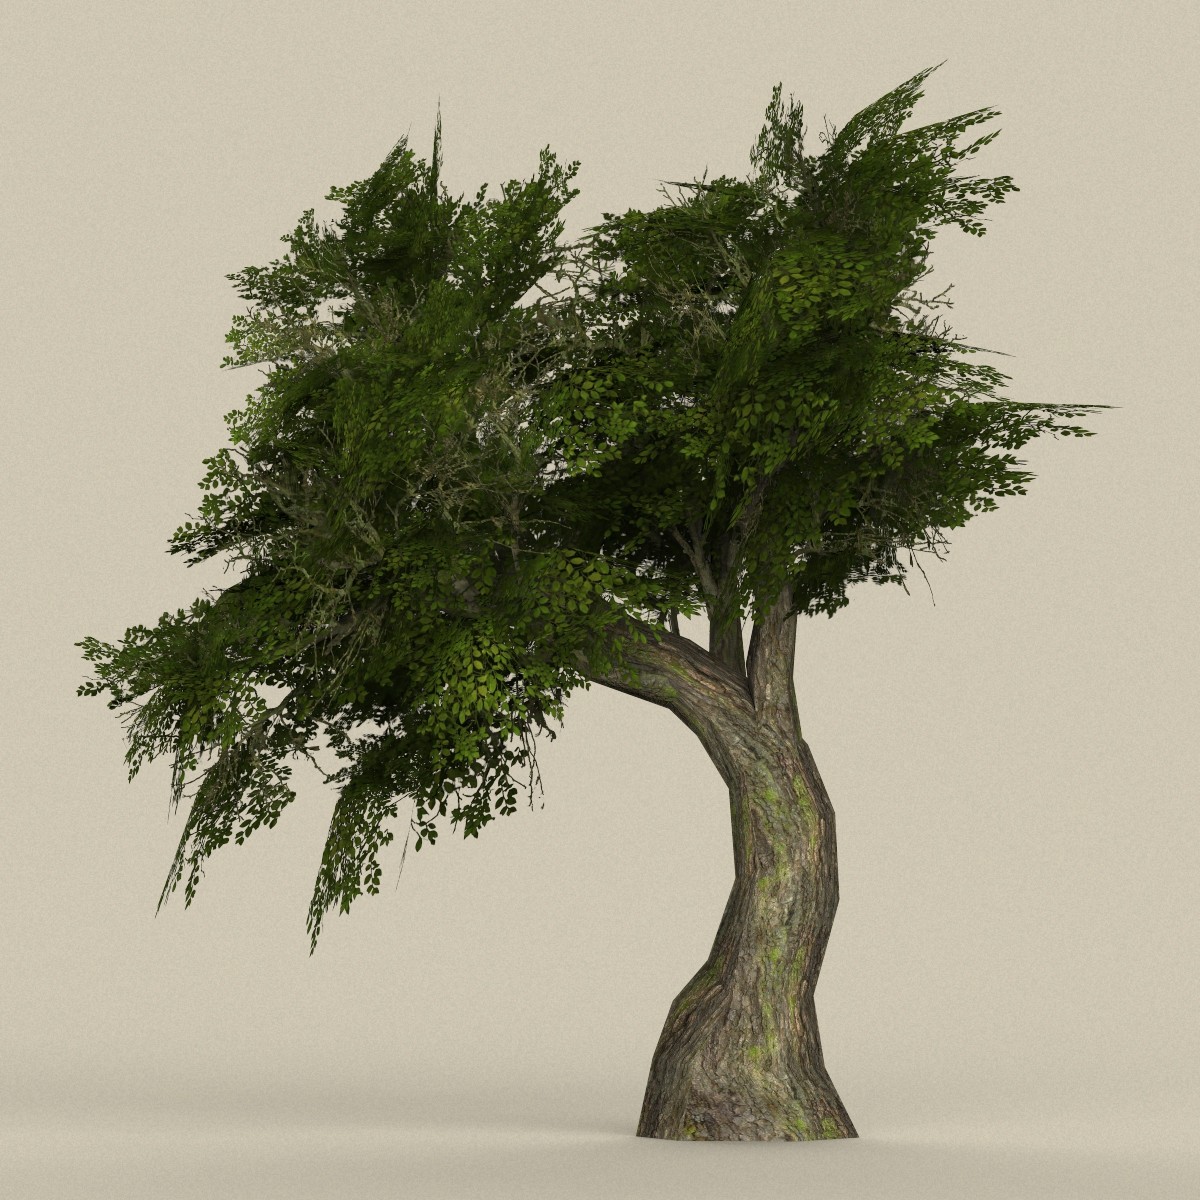 Дерево в 3 d. Tree 3ds Max. TEW Tree 3d model. Дерево для 3д Макс.